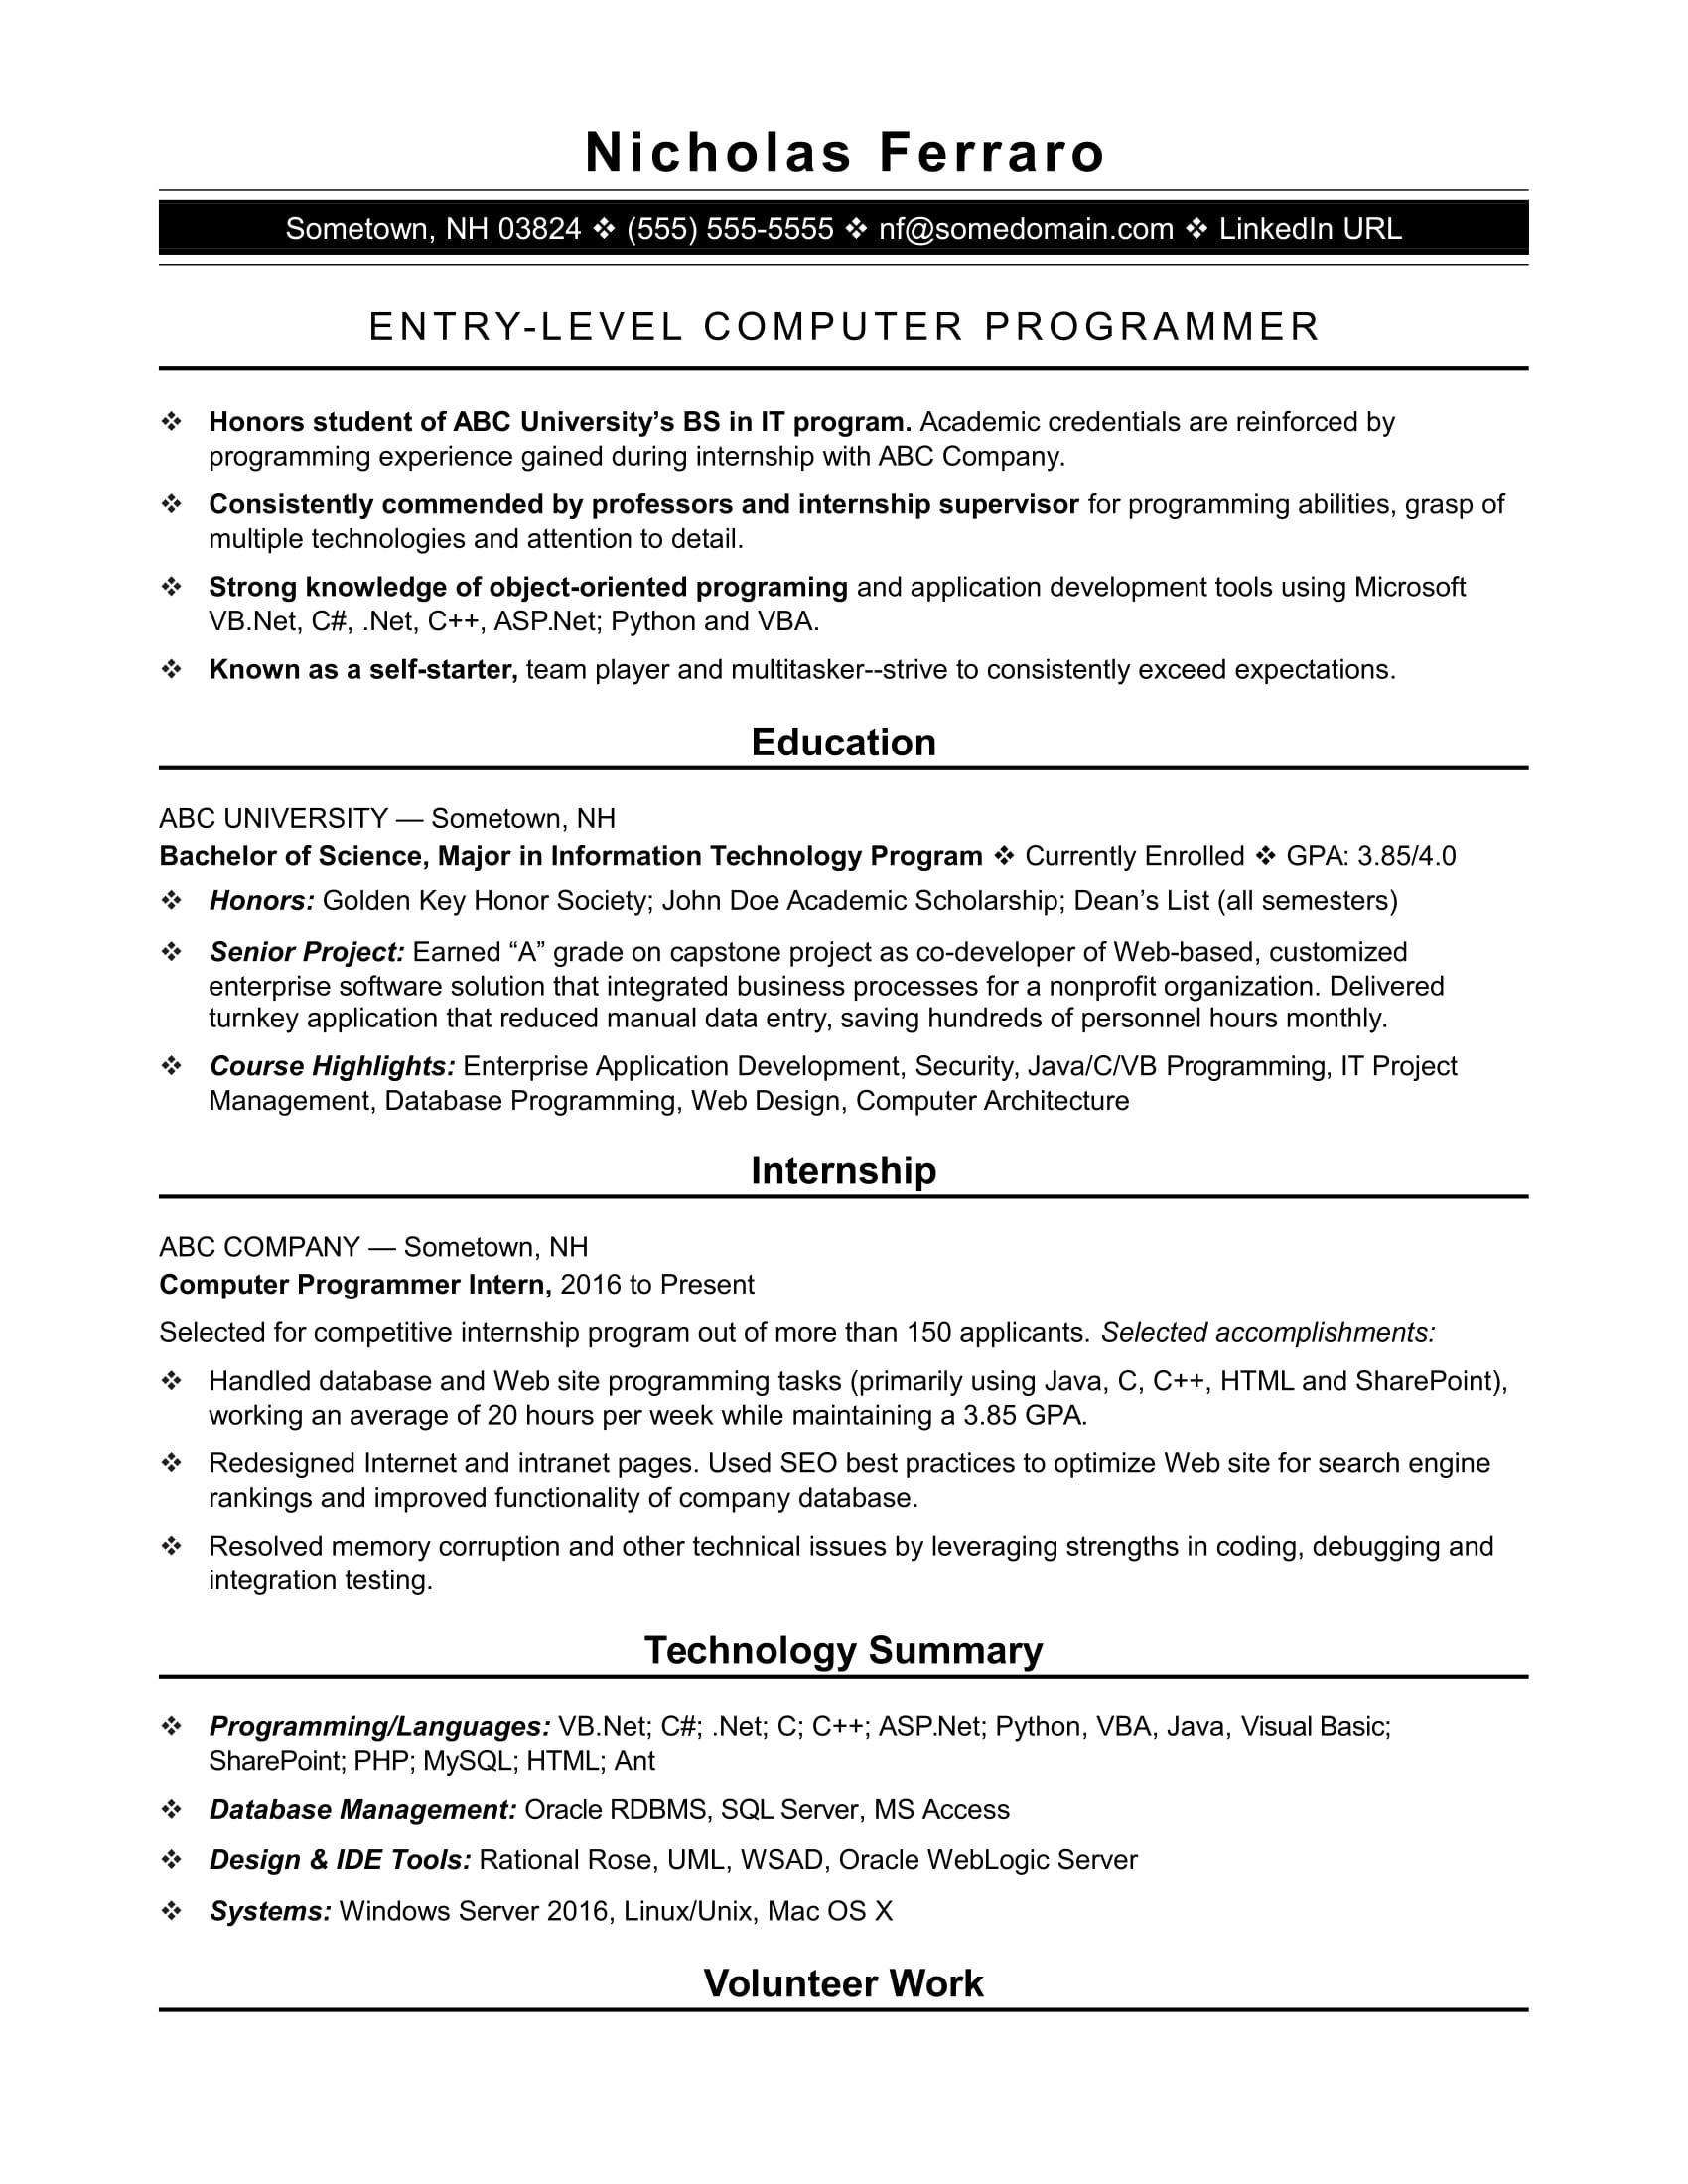 Sample Resume For An Entry Level Computer Programmer | Monster.com